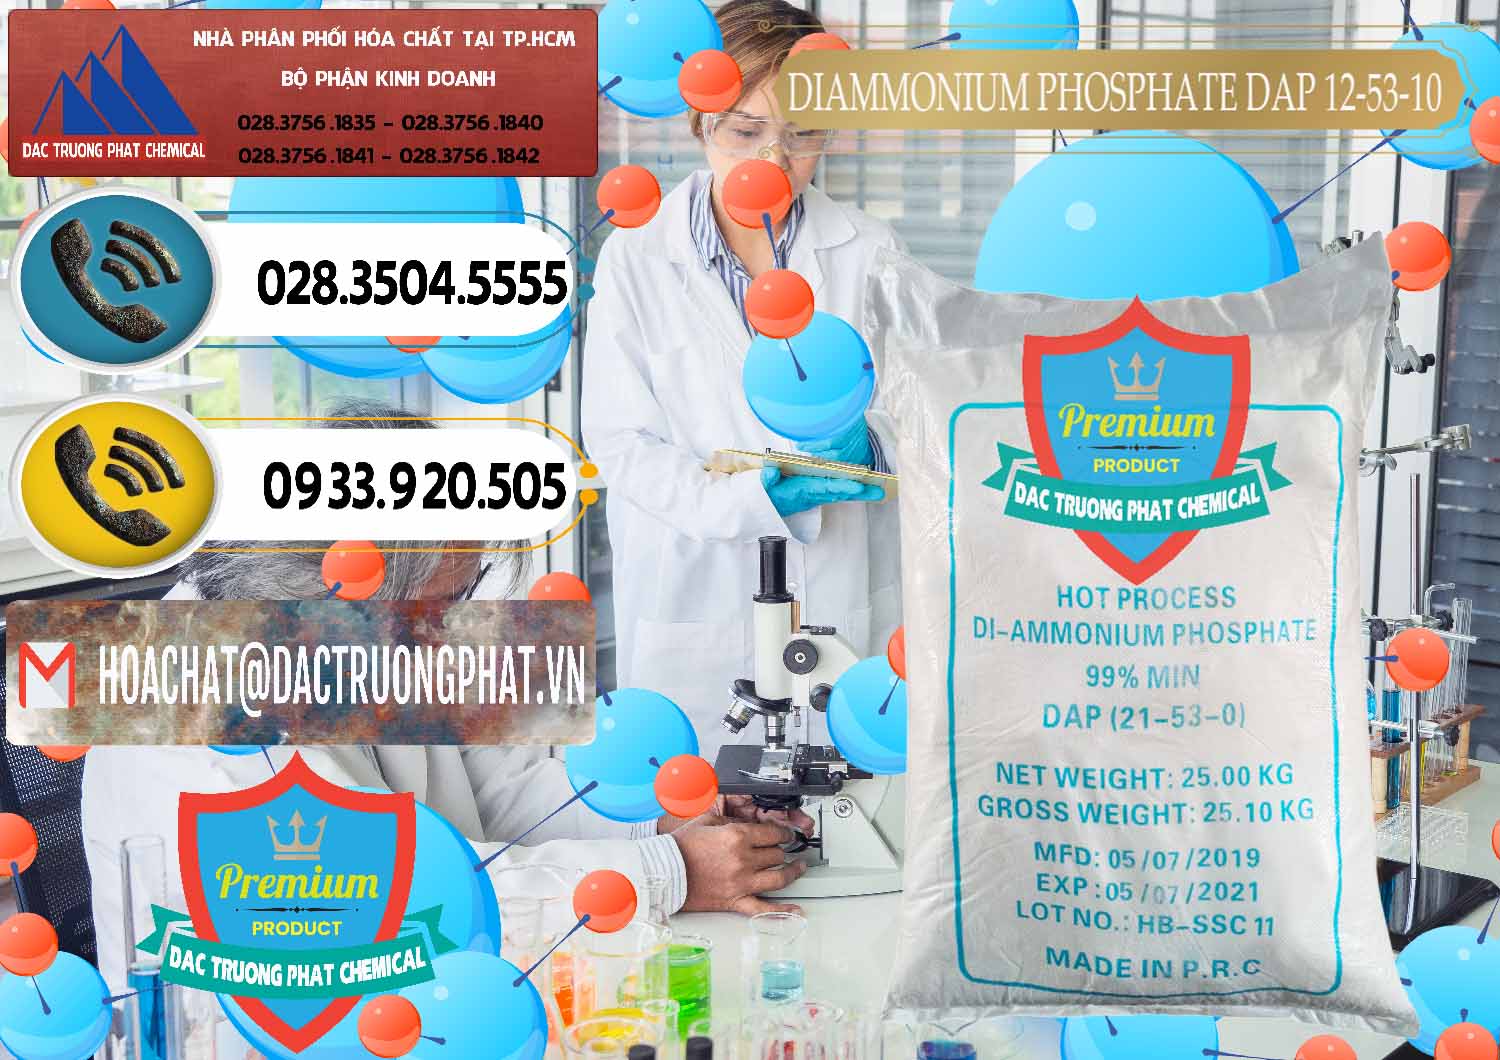 Cty chuyên cung cấp _ bán DAP - Diammonium Phosphate Trung Quốc China - 0319 - Công ty cung cấp - phân phối hóa chất tại TP.HCM - hoachatdetnhuom.vn